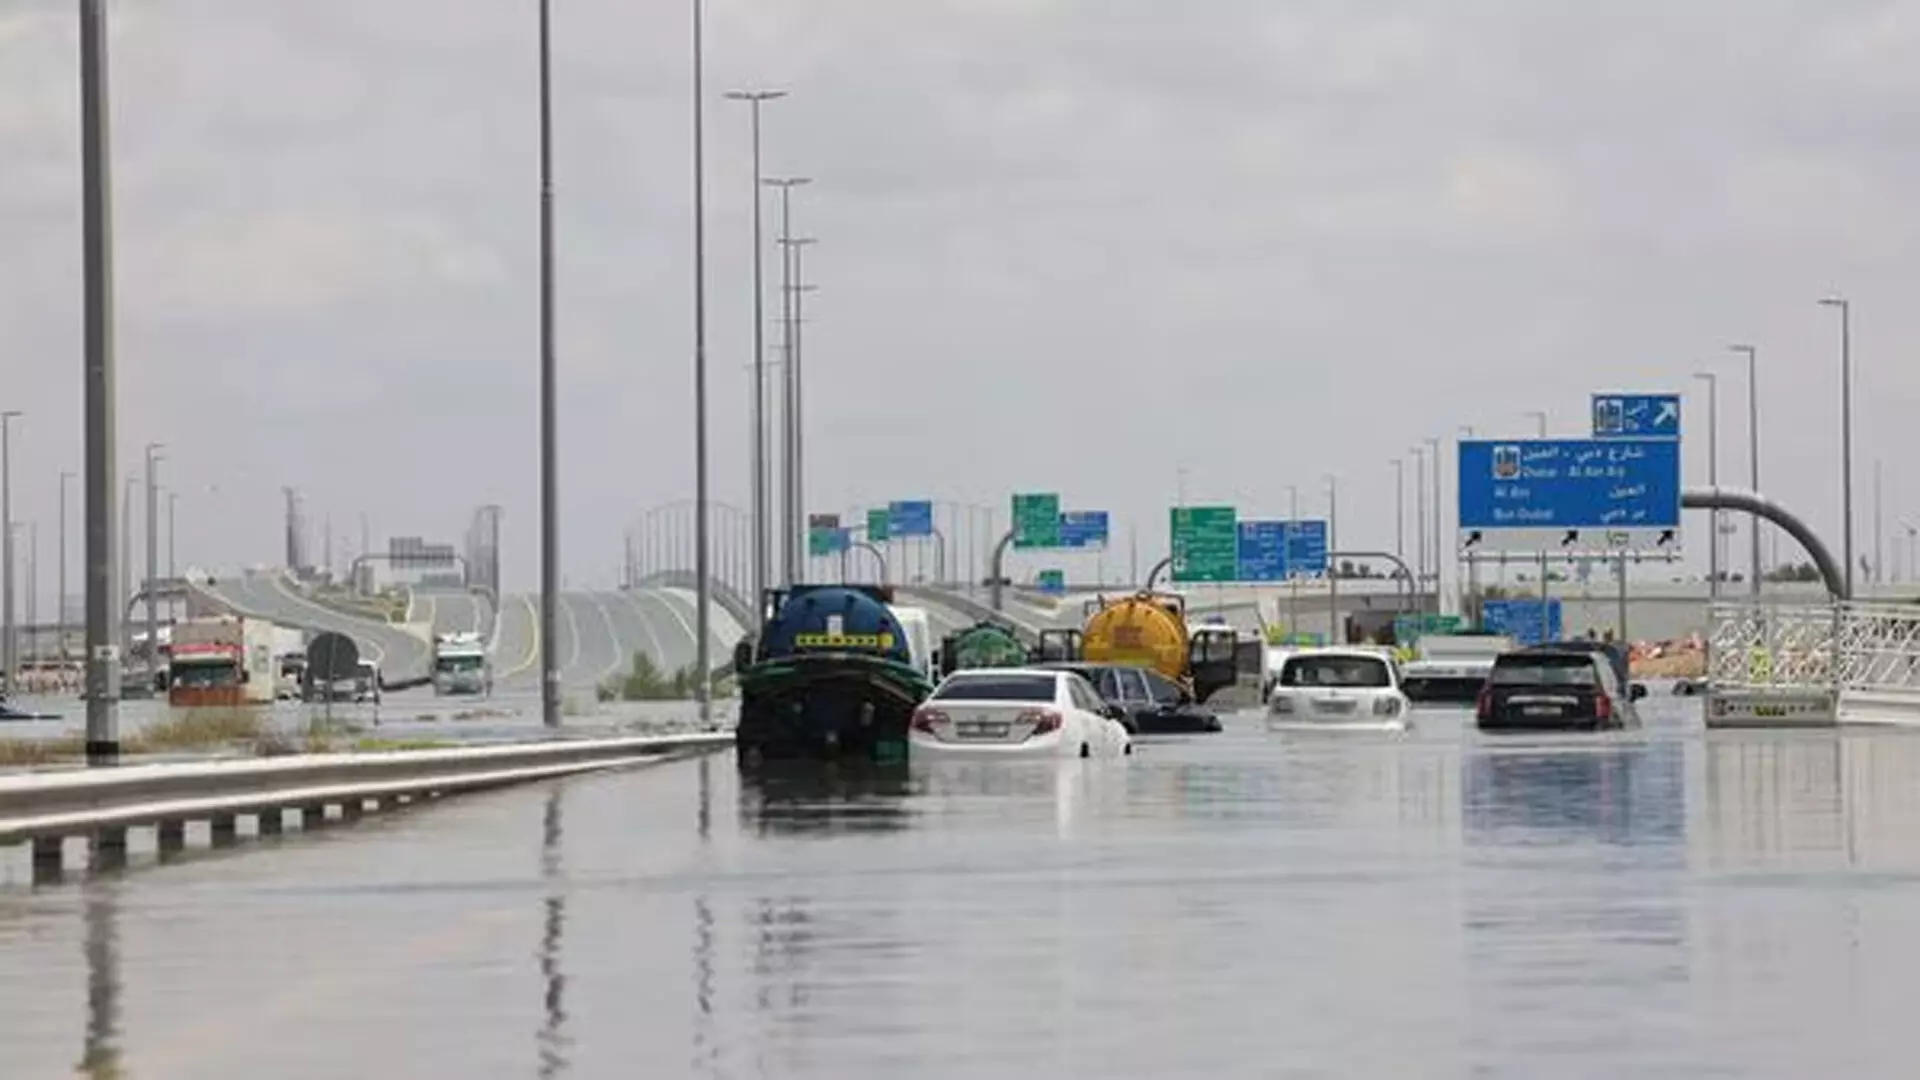 जानिए दुबई में बारिश का कहर की वजह, क्लाउड सीडिंग या जलवायु परिवर्तन